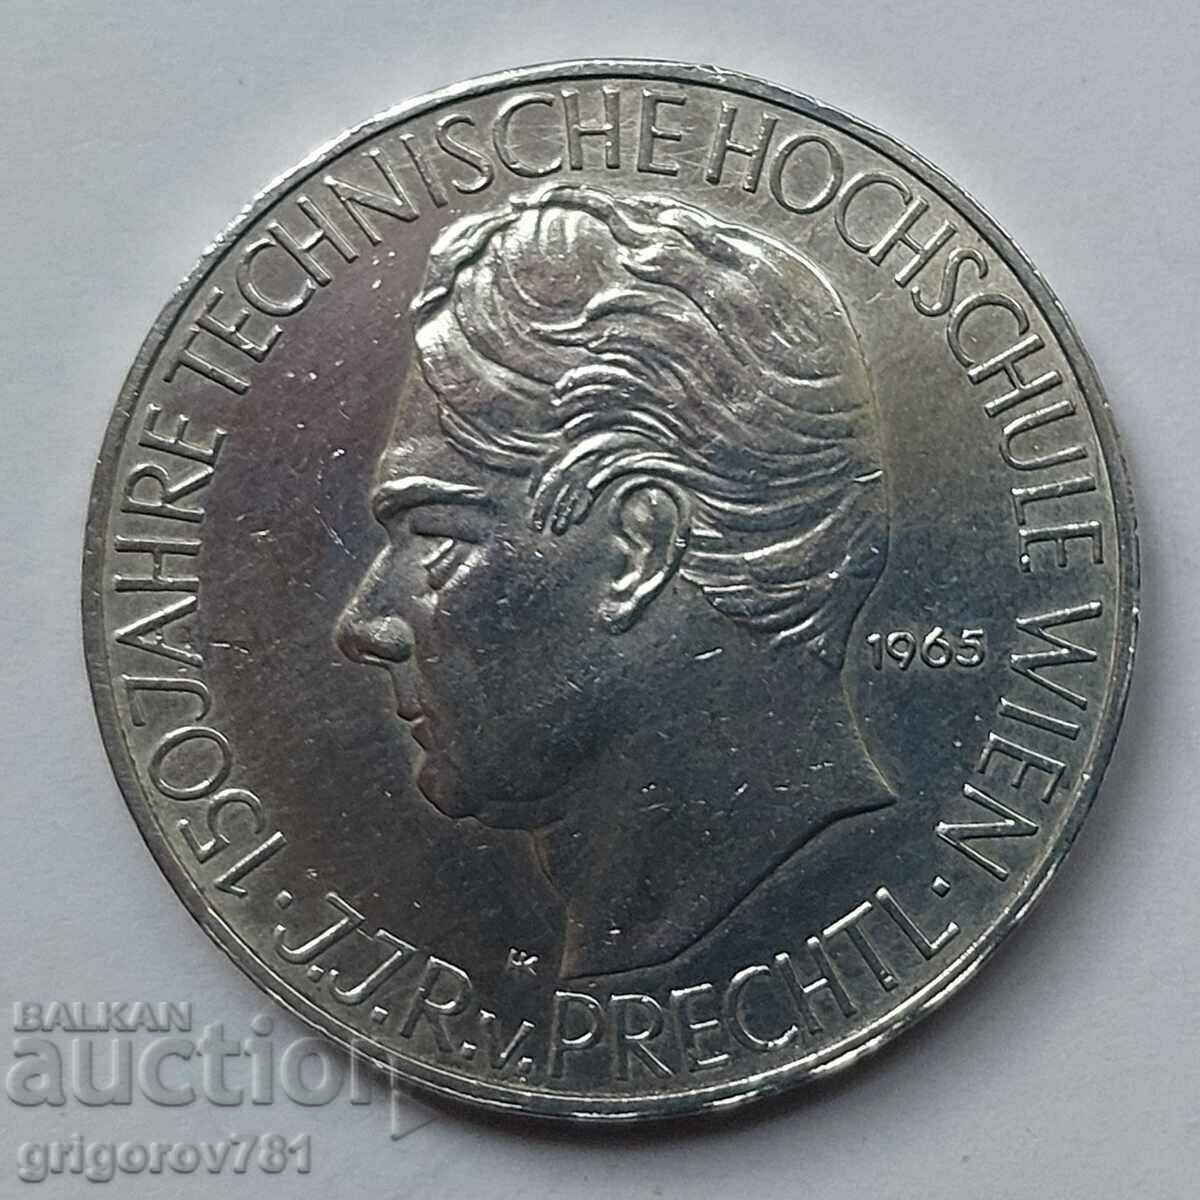 25 Shilling Argint Austria 1965 - Moneda de argint #26